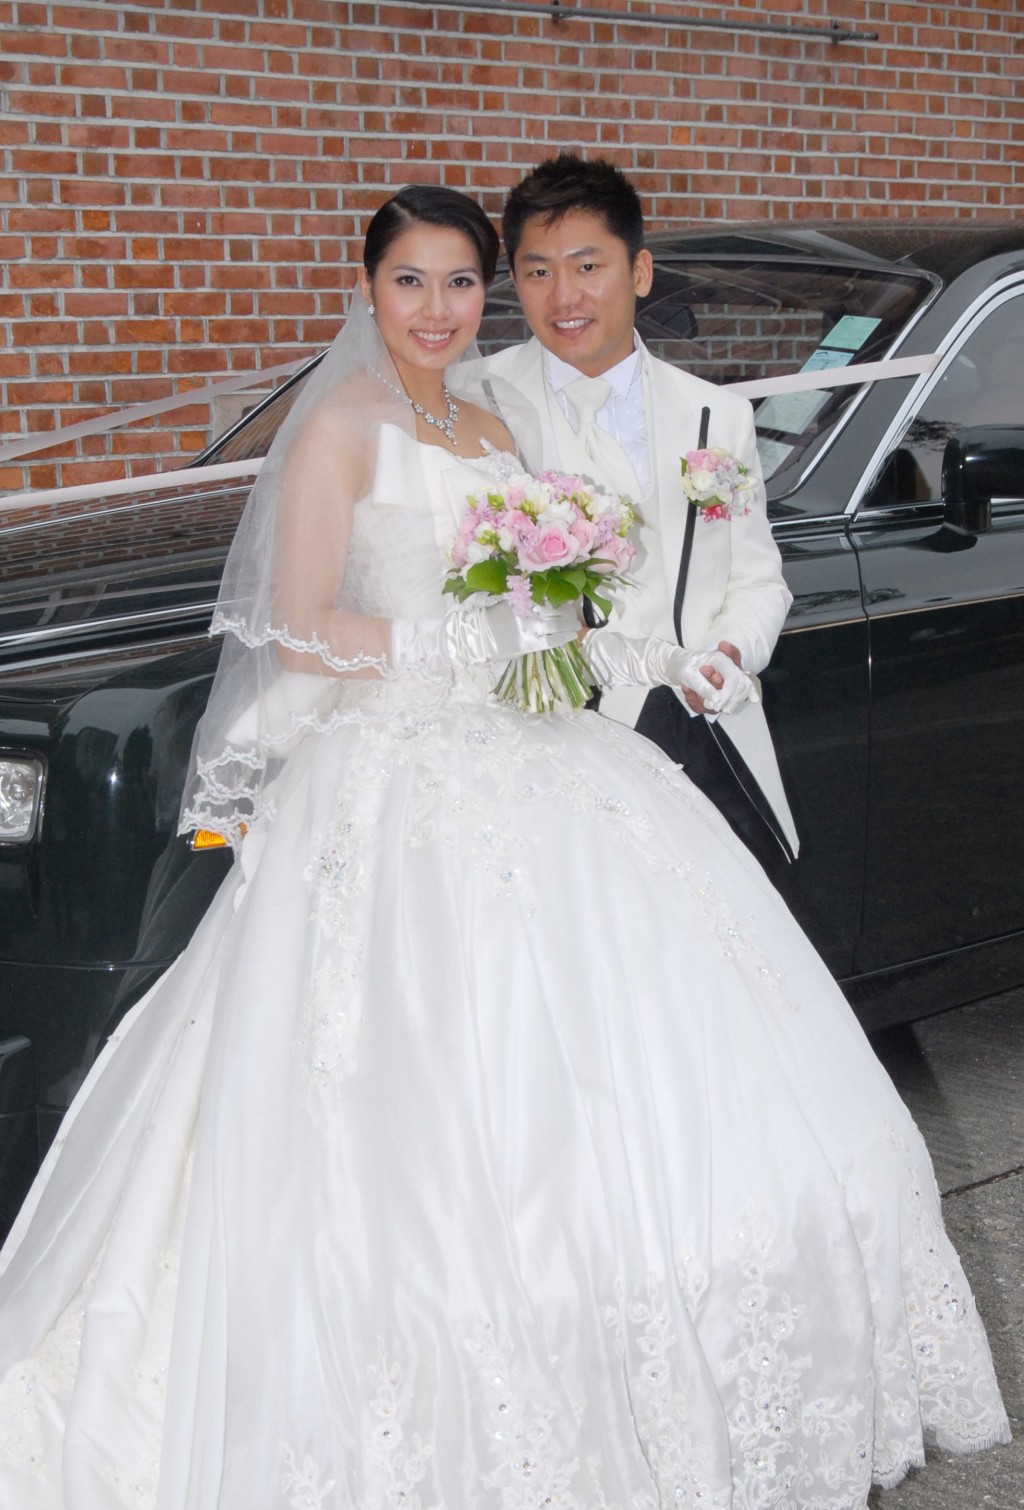 可岚于2010年与第一任老公尤子威举行婚礼。